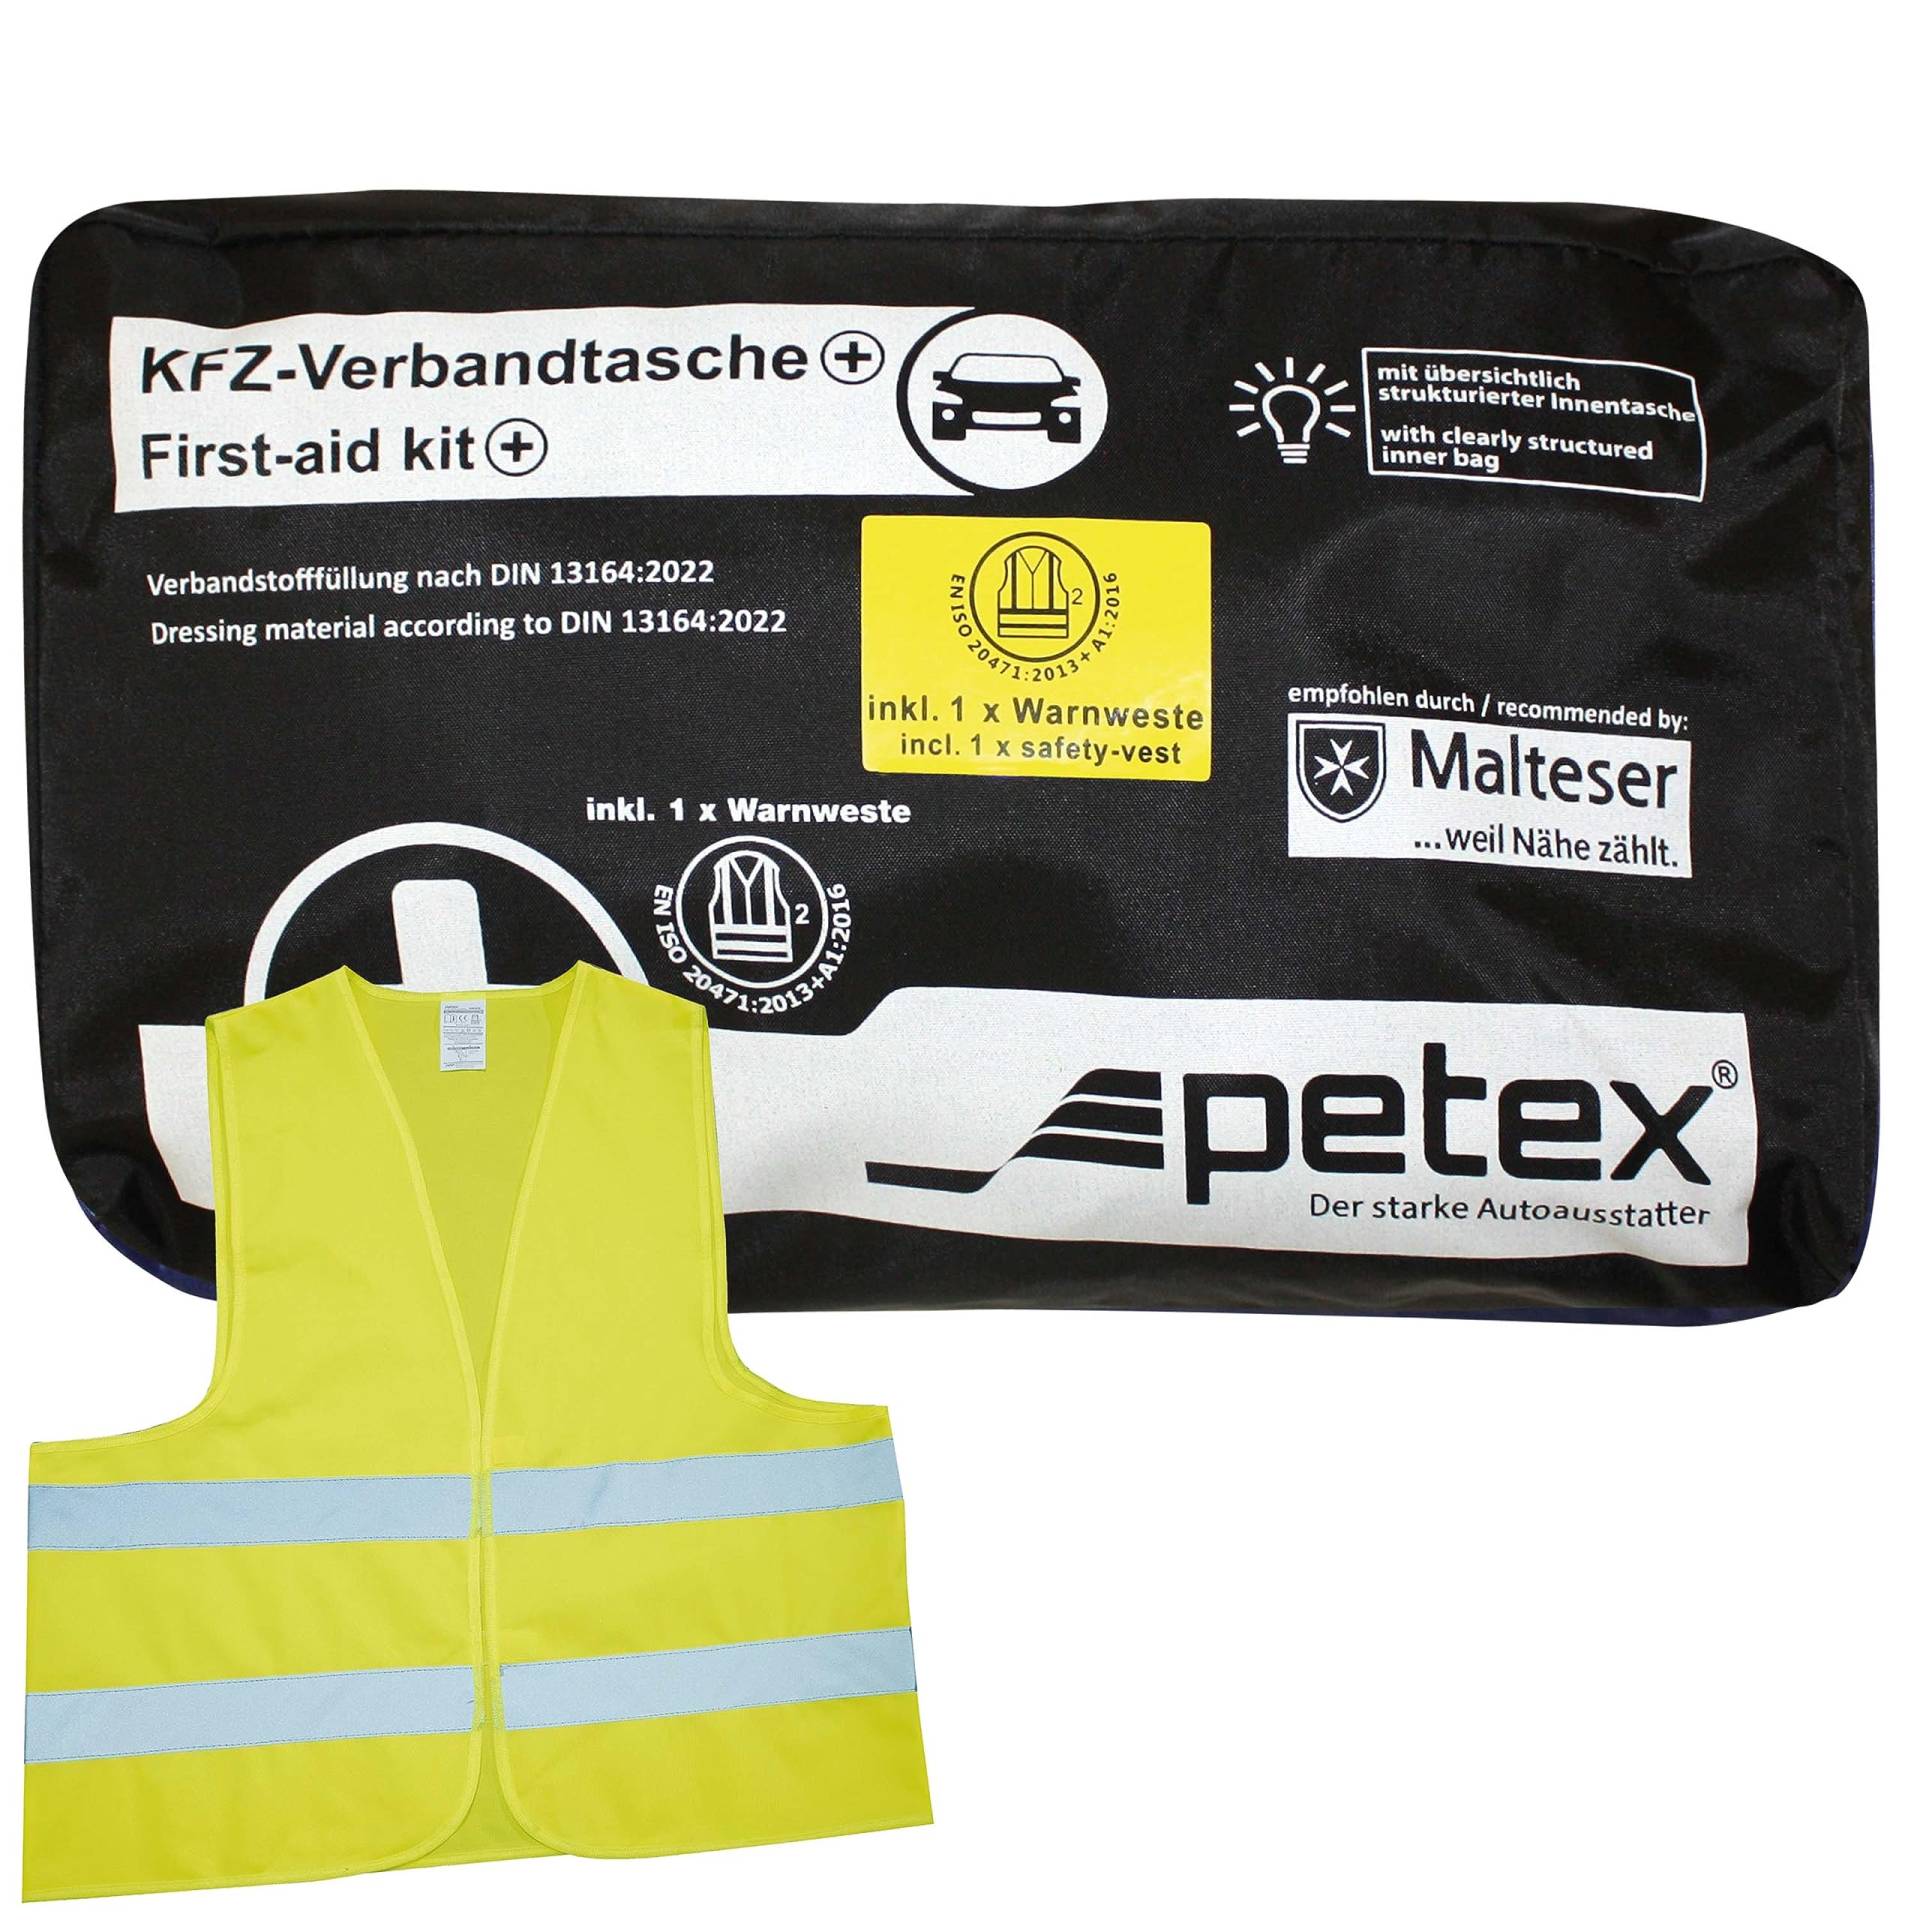 PETEX 2 in 1 Verbandtasche Plus, Inhalt nach DIN13164:2022 in Schwarz, Erste-Hilfe, First-Aid-Kit von PETEX